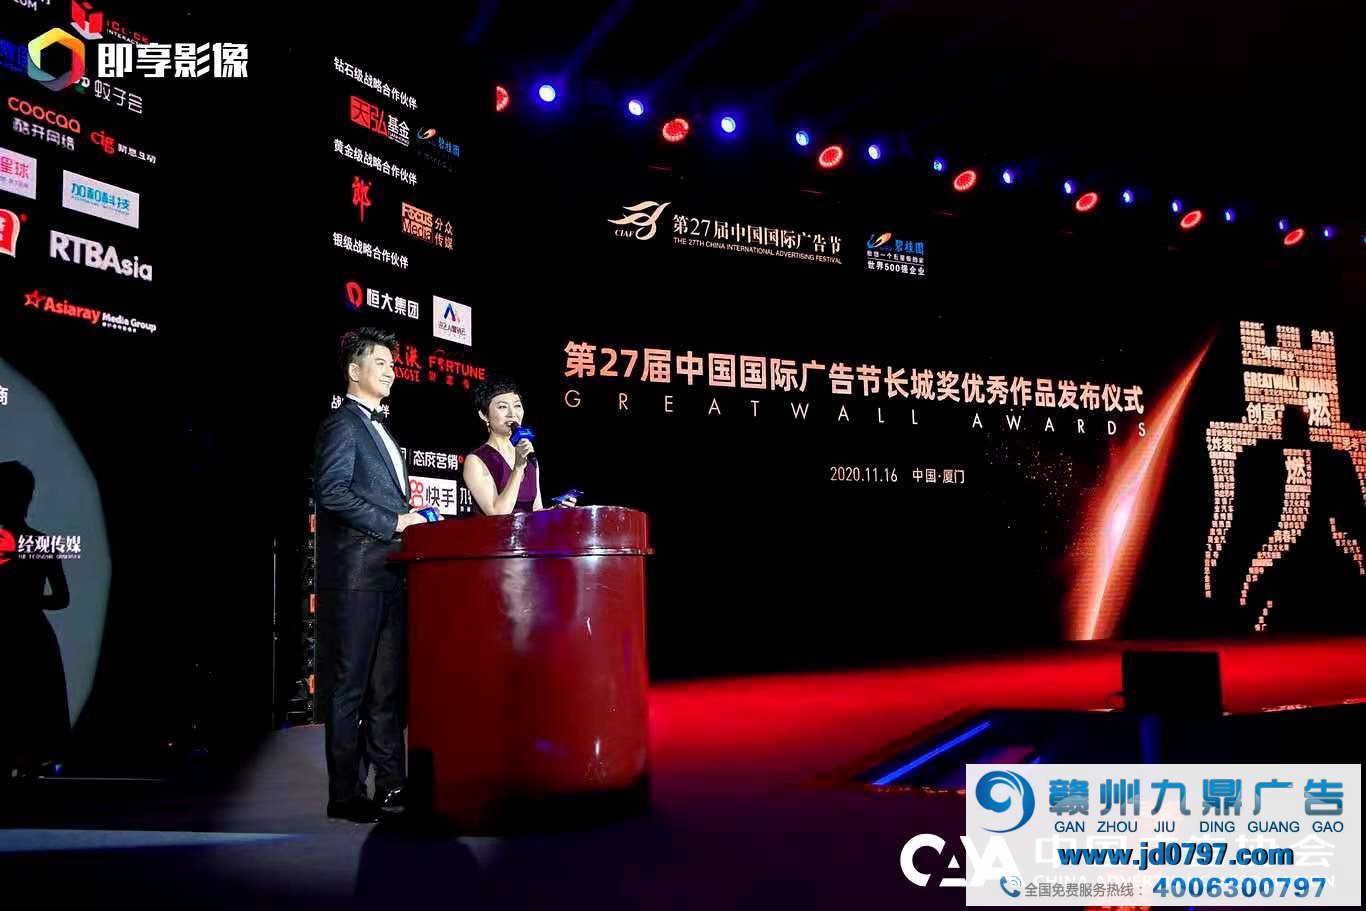 第27届中国国际告白节-长城奖优秀作品宣布典礼在厦门进行